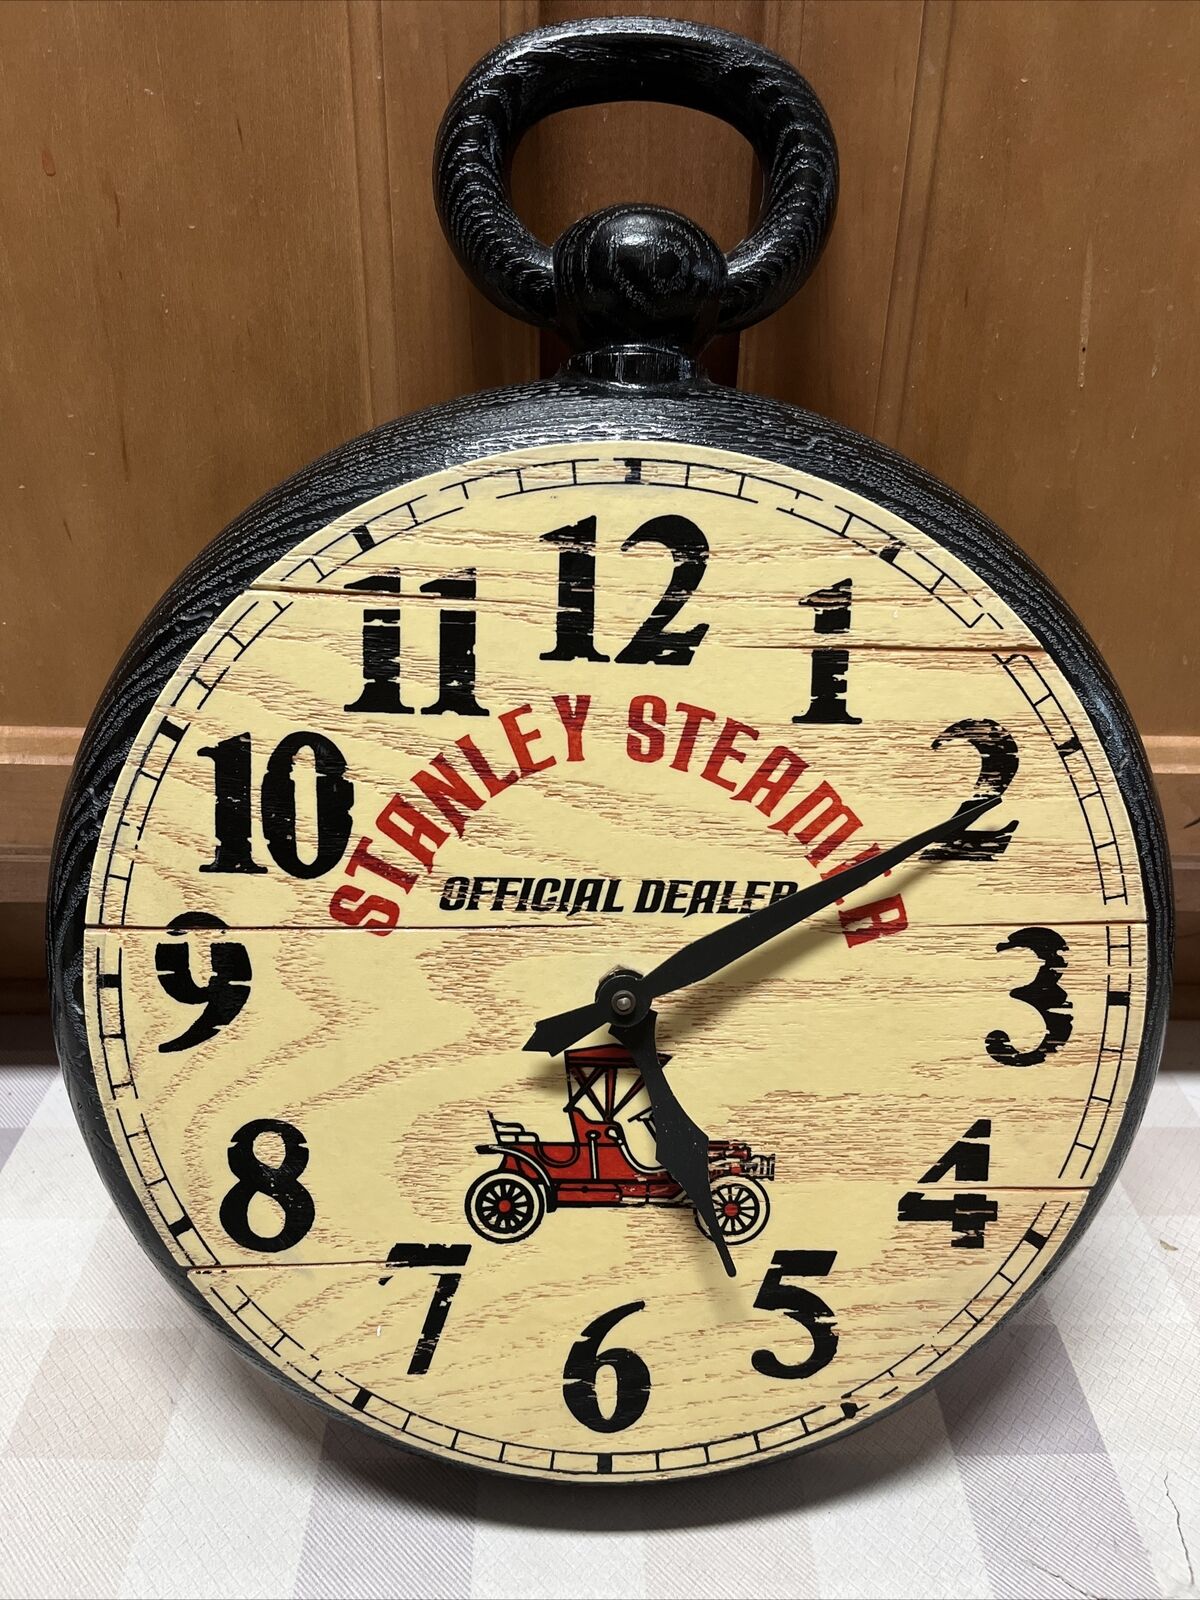 Rare Vintage Stanley Steamer Official Dealer Clock Store Display Advertising vtg